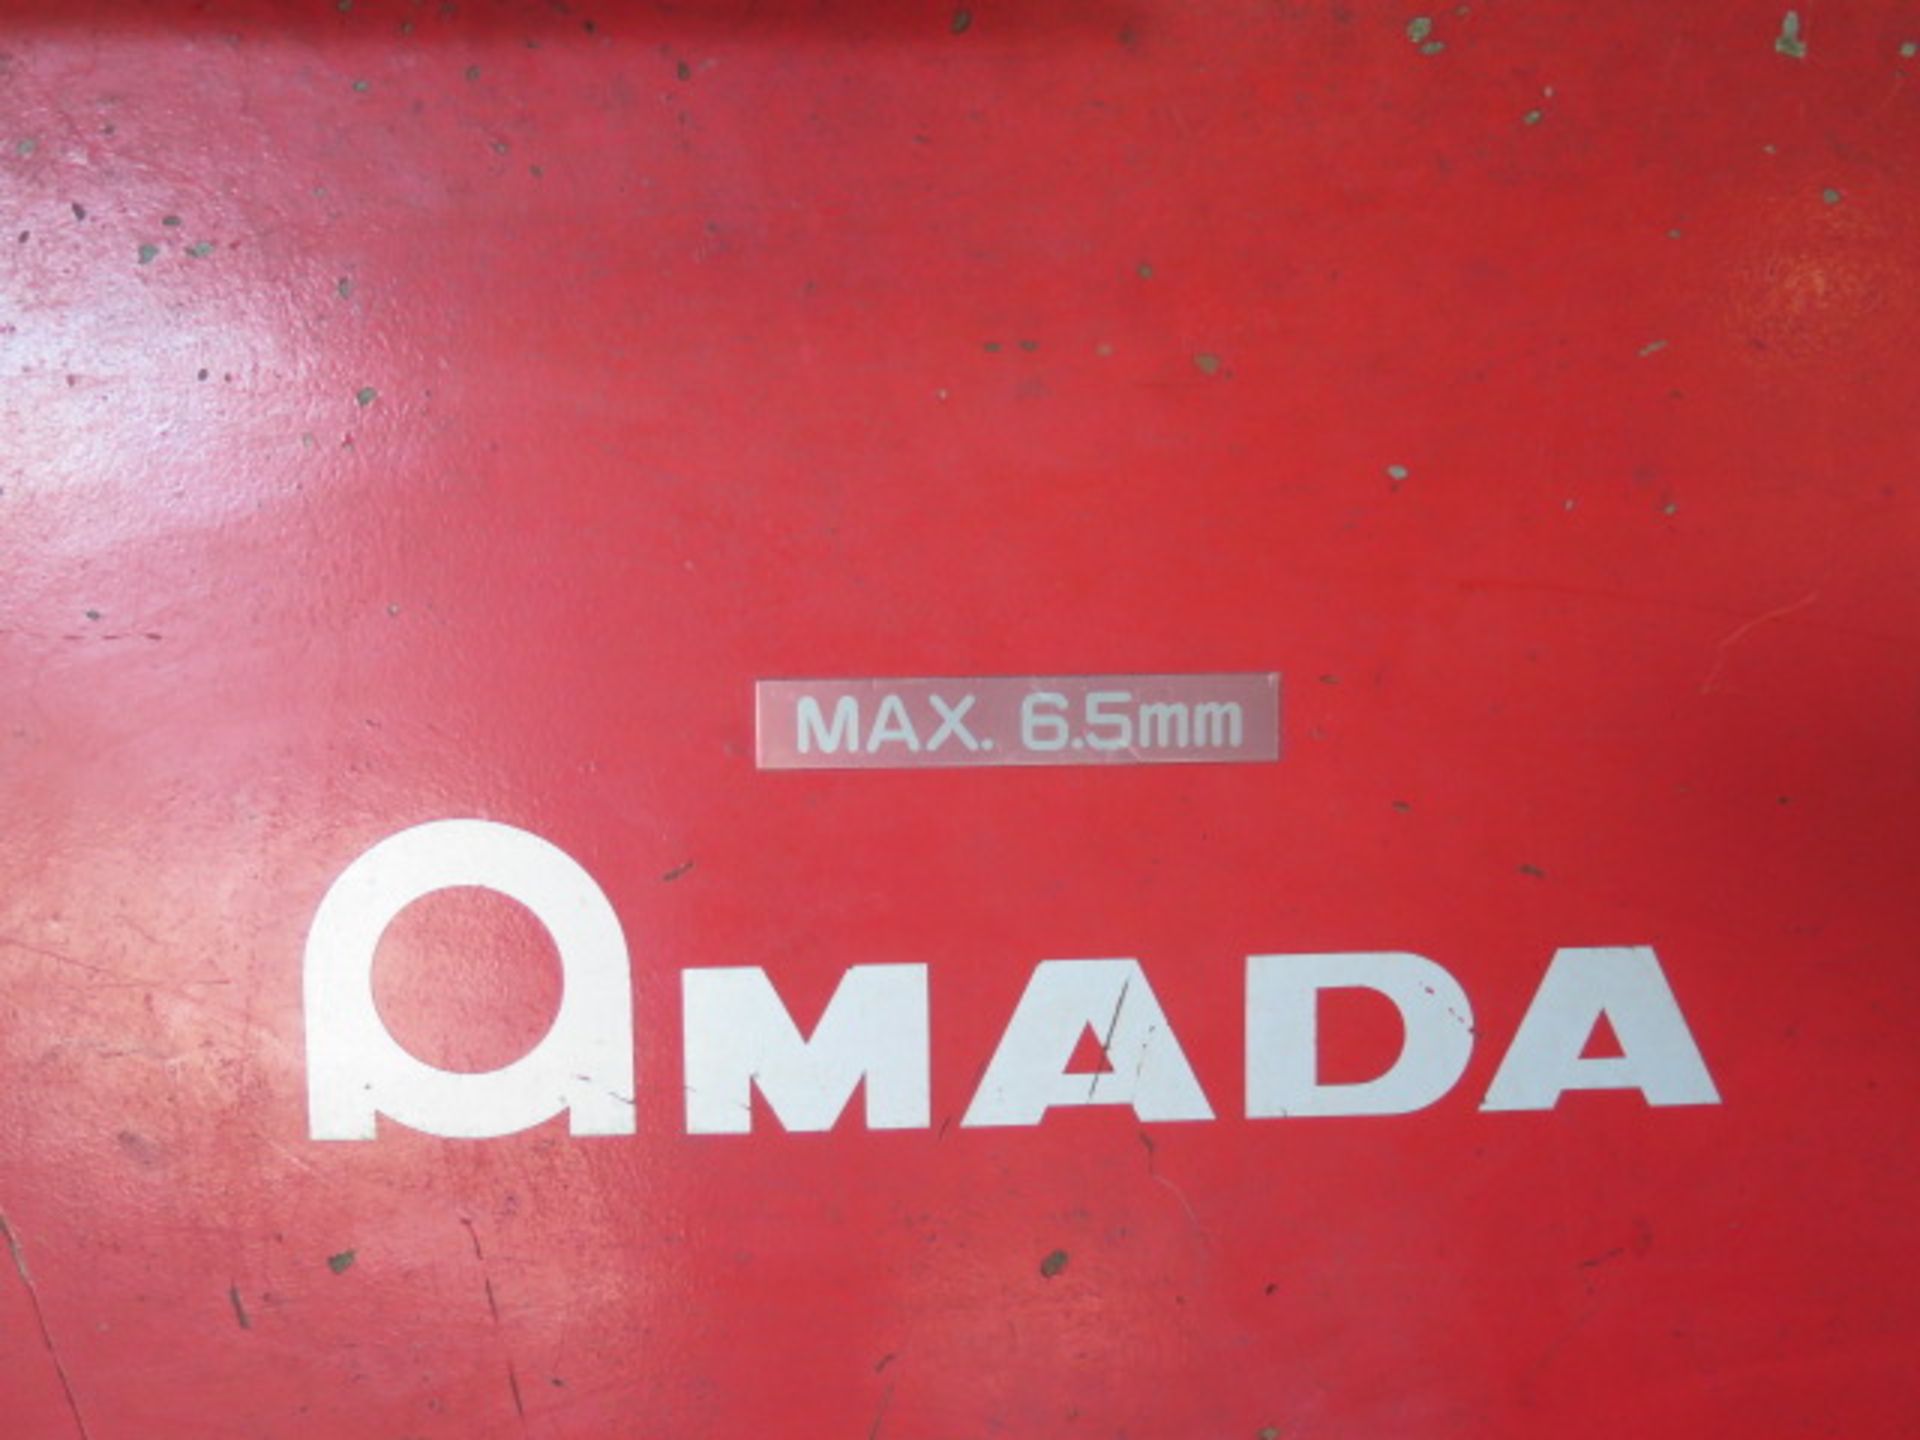 1998 Amada M-4065 ¼” x 161” Power Shear s/n 40650172 T-44 w/ Amada Digital Controls, SOLD AS IS - Image 8 of 11